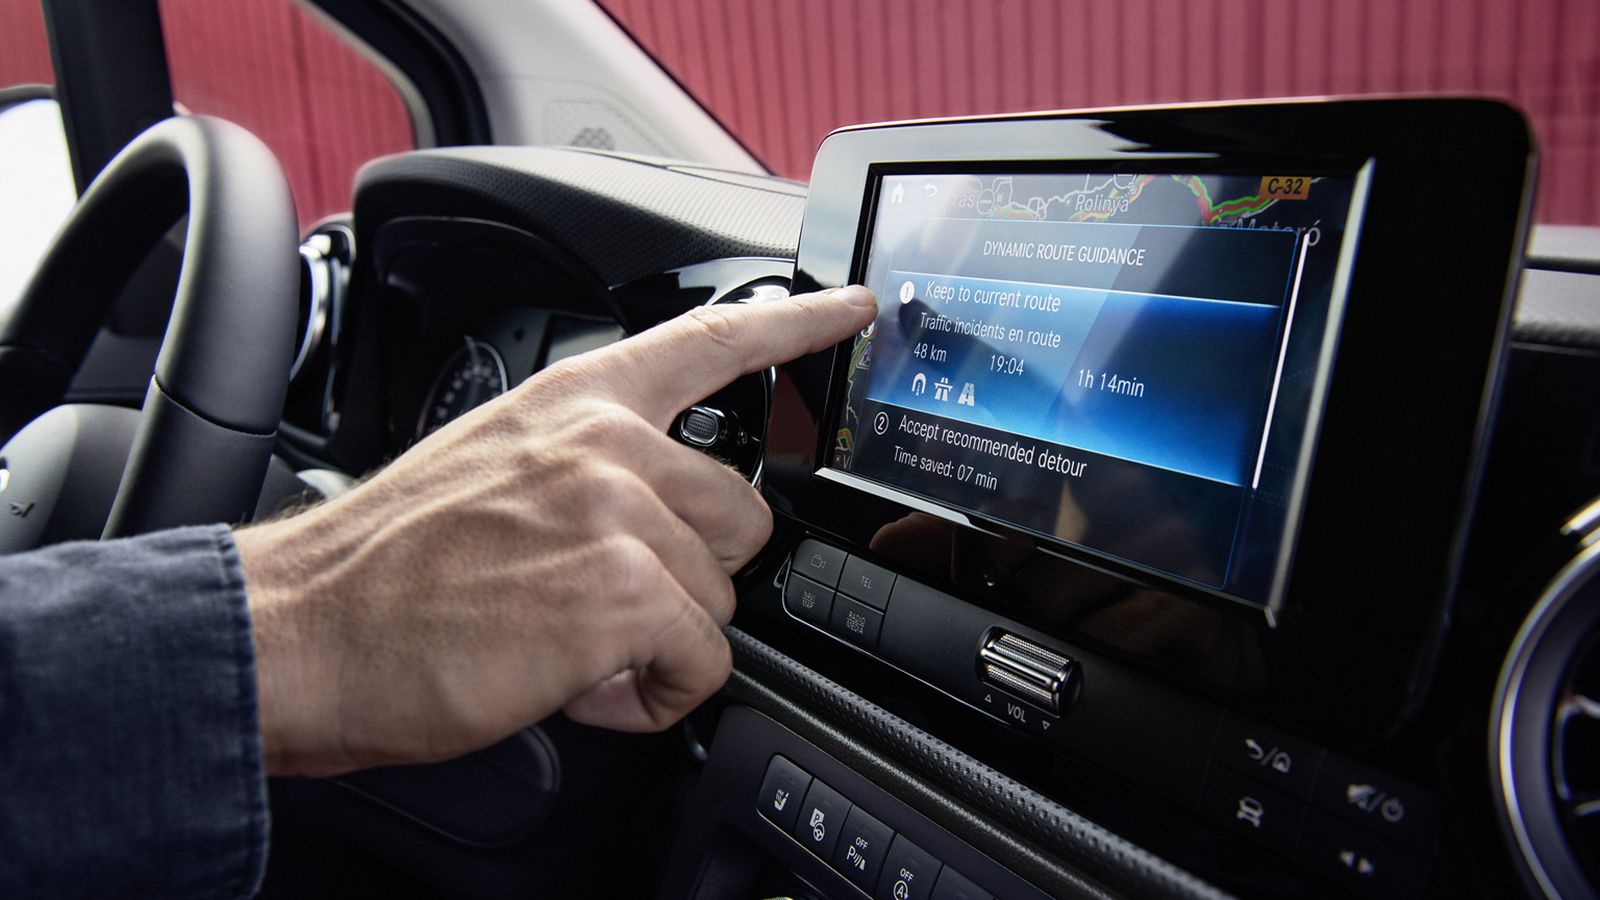 Πιο εύκολη κάνουν τη ζωή του οδηγού το πλήθος τεχνολογικών εφαρμογών συνδεσιμότητας, με προεξάρχον το σύστημα infotainment MBUX (Mercedes Benz User Experience) που προσφέρει διαισθητικό χειρισμό.